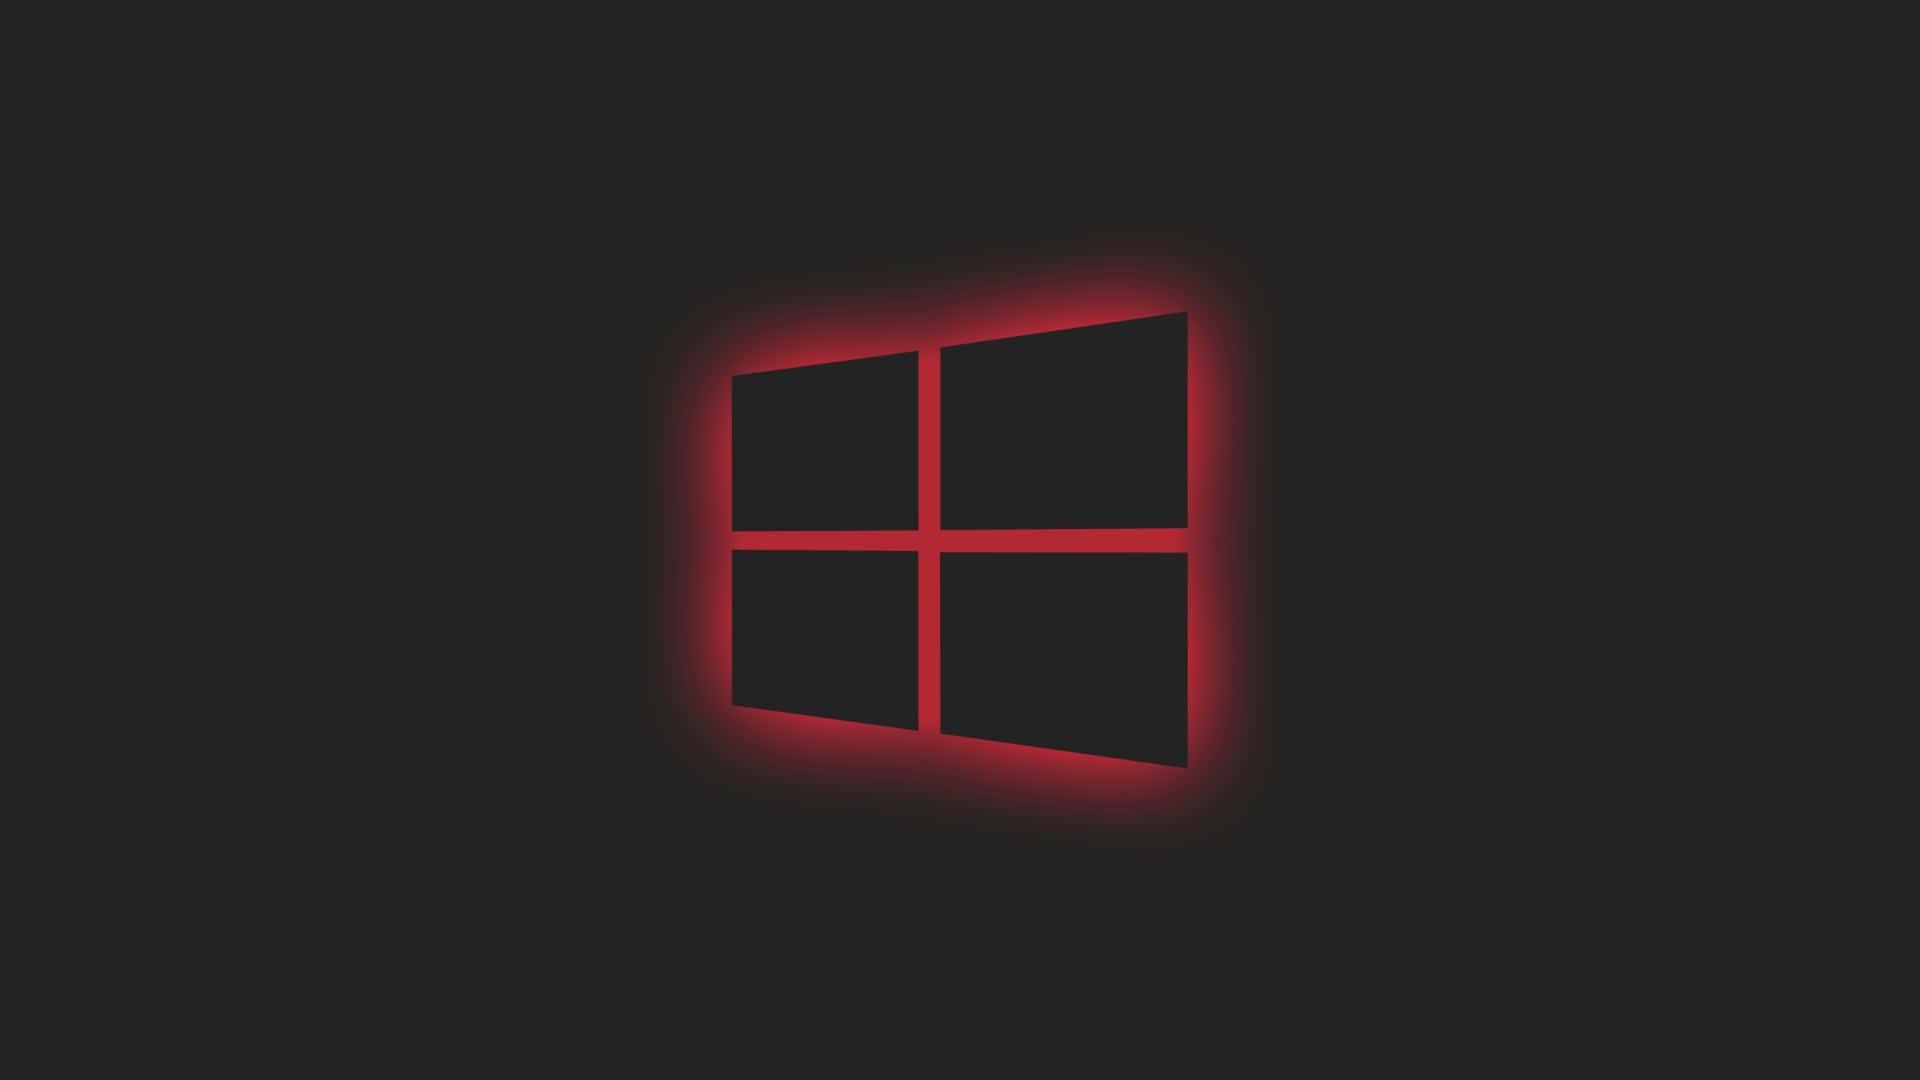 Hình nền đẹp Windows - Bạn đang tìm kiếm một hình nền độc đáo và đẹp mắt cho Laptop Windows của mình? Hãy khám phá các hình nền Windows tuyệt đẹp và độc đáo dưới đây. Những hình nền sáng tạo sẽ giúp bạn tạo dựng phong cách riêng của mình và làm việc hiệu quả hơn.